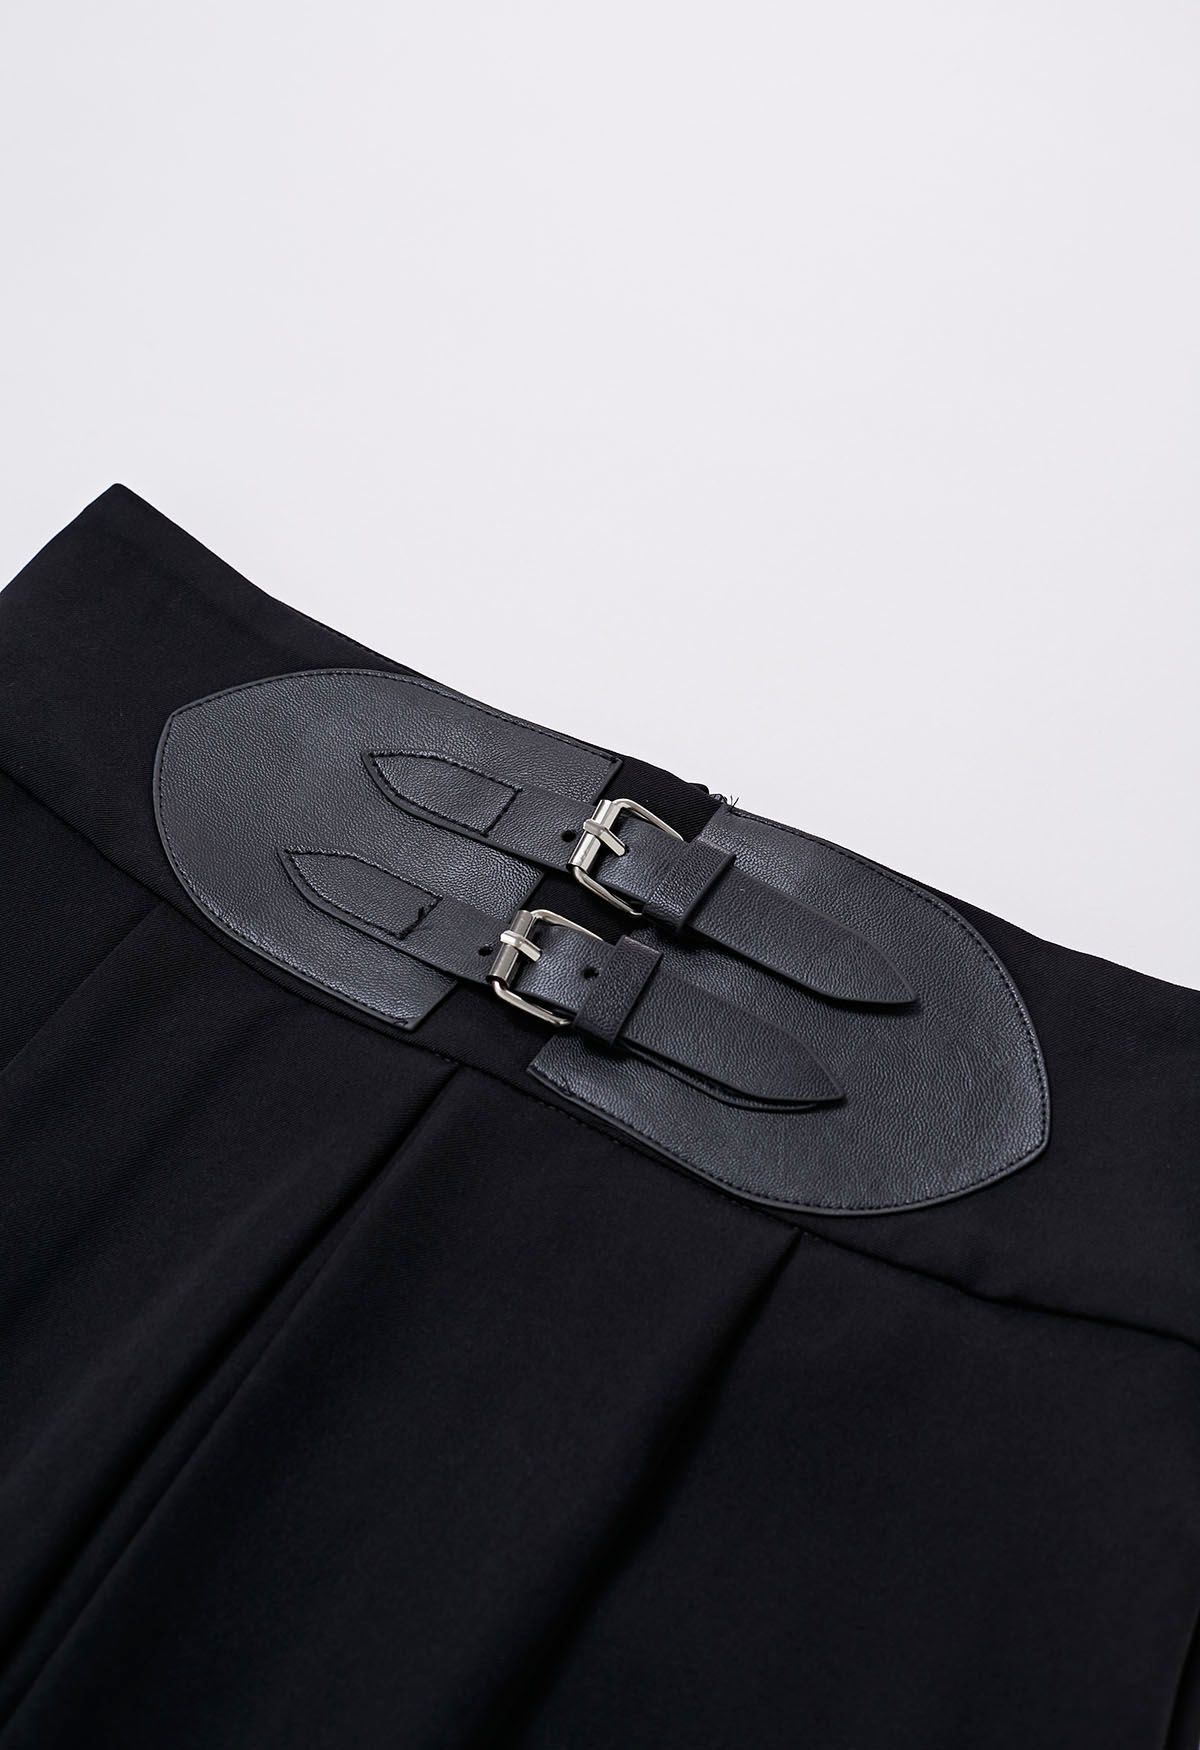 Falda midi plisada de cintura alta con adornos de cinturón en negro